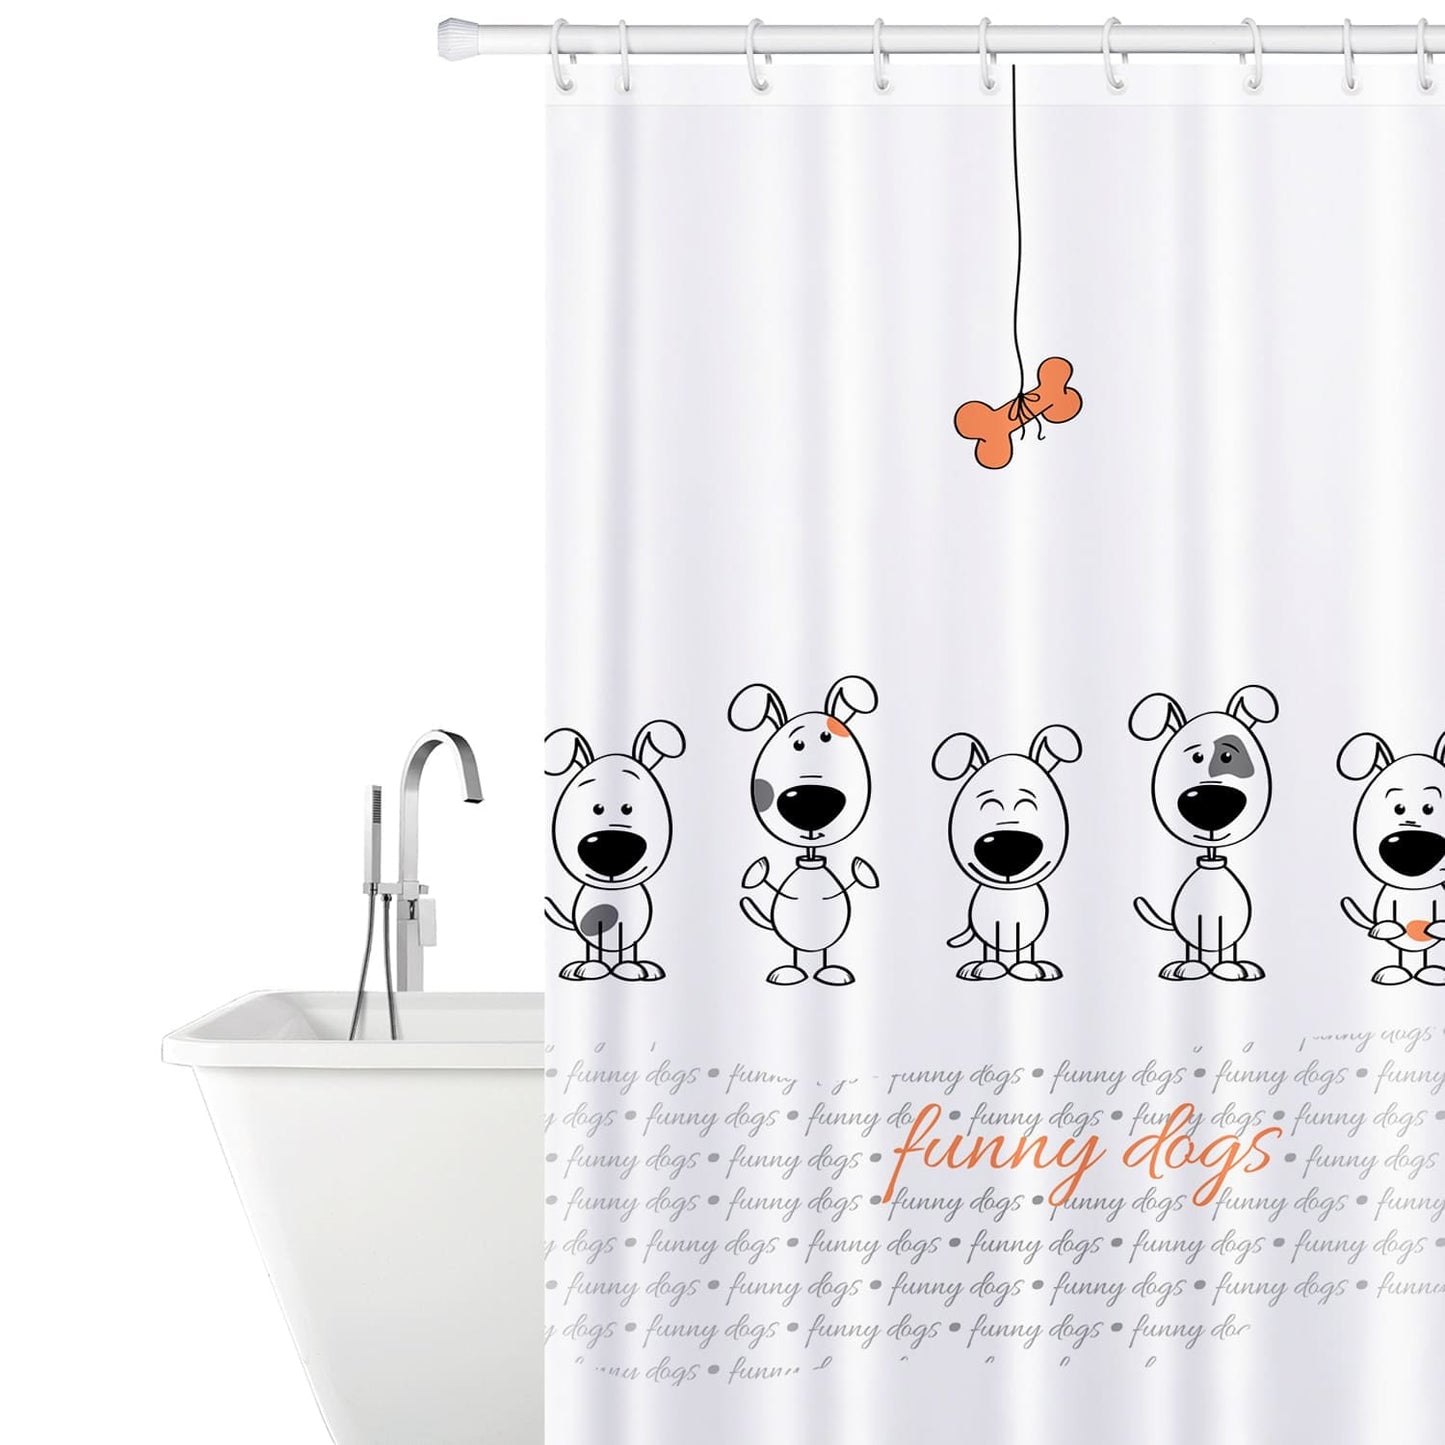 Duschvorhang, Duschvorhang Textil, mit 12 Vorhangringen, Bade Vorhang, Textil Polyester, 180x180cm, Tatkraft Funny Dogs